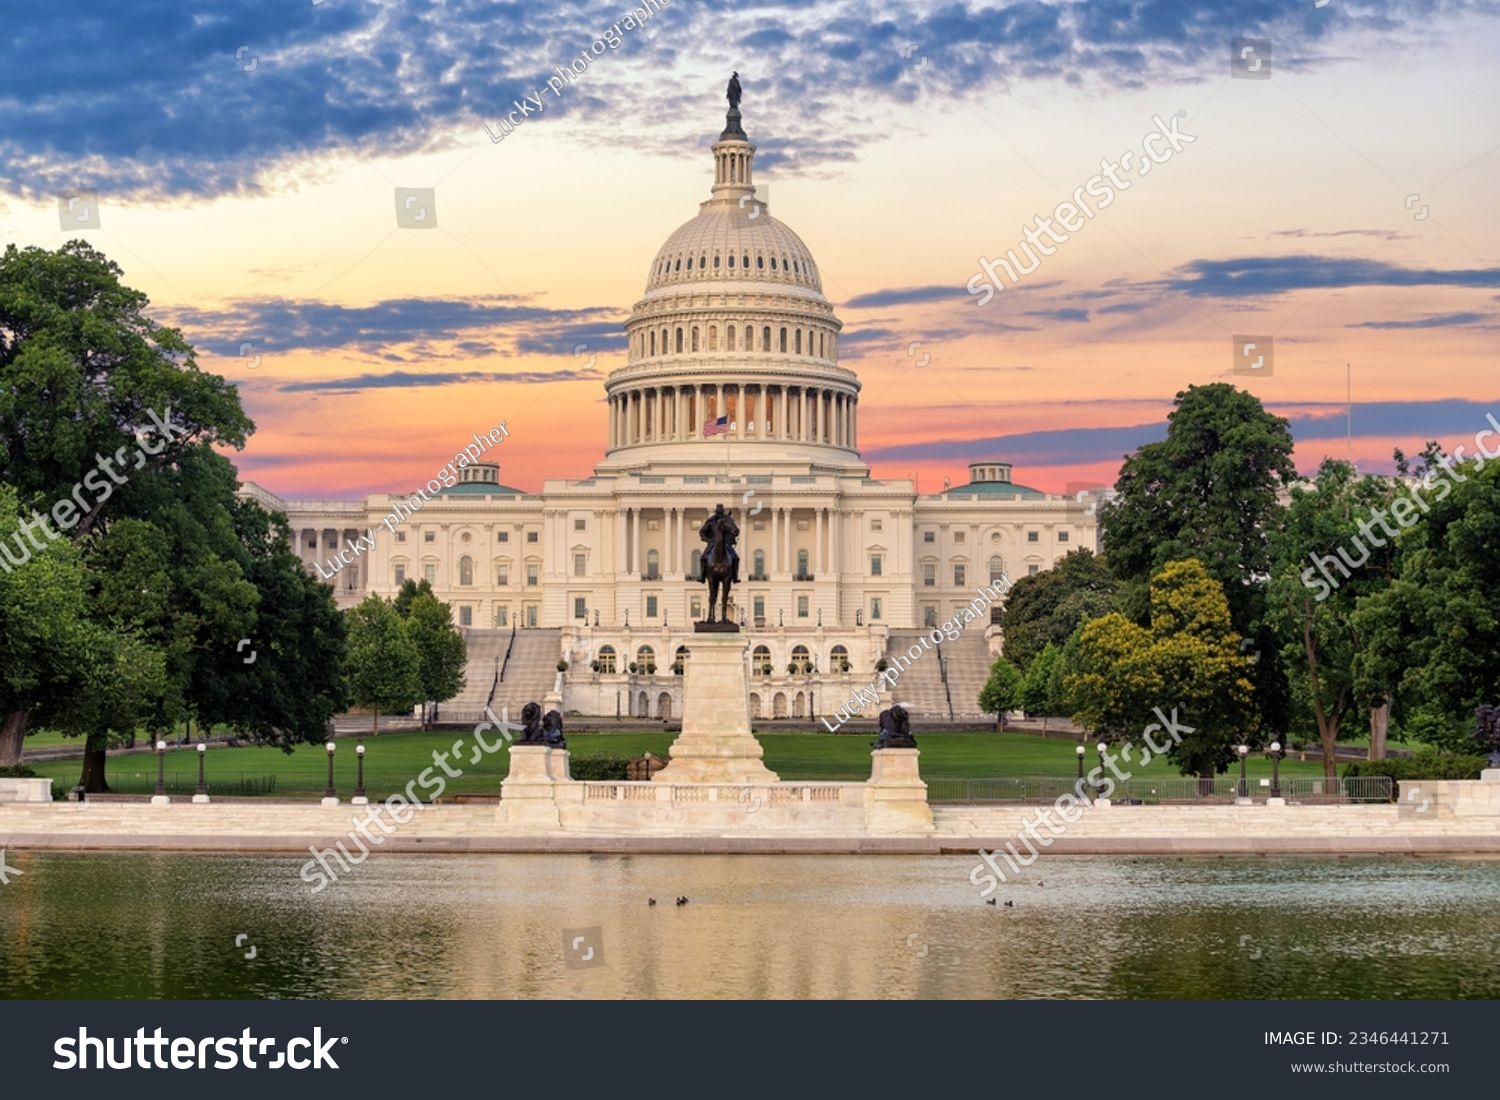 The United States Capitol building at sunrise, Washington DC, USA. #2346441271